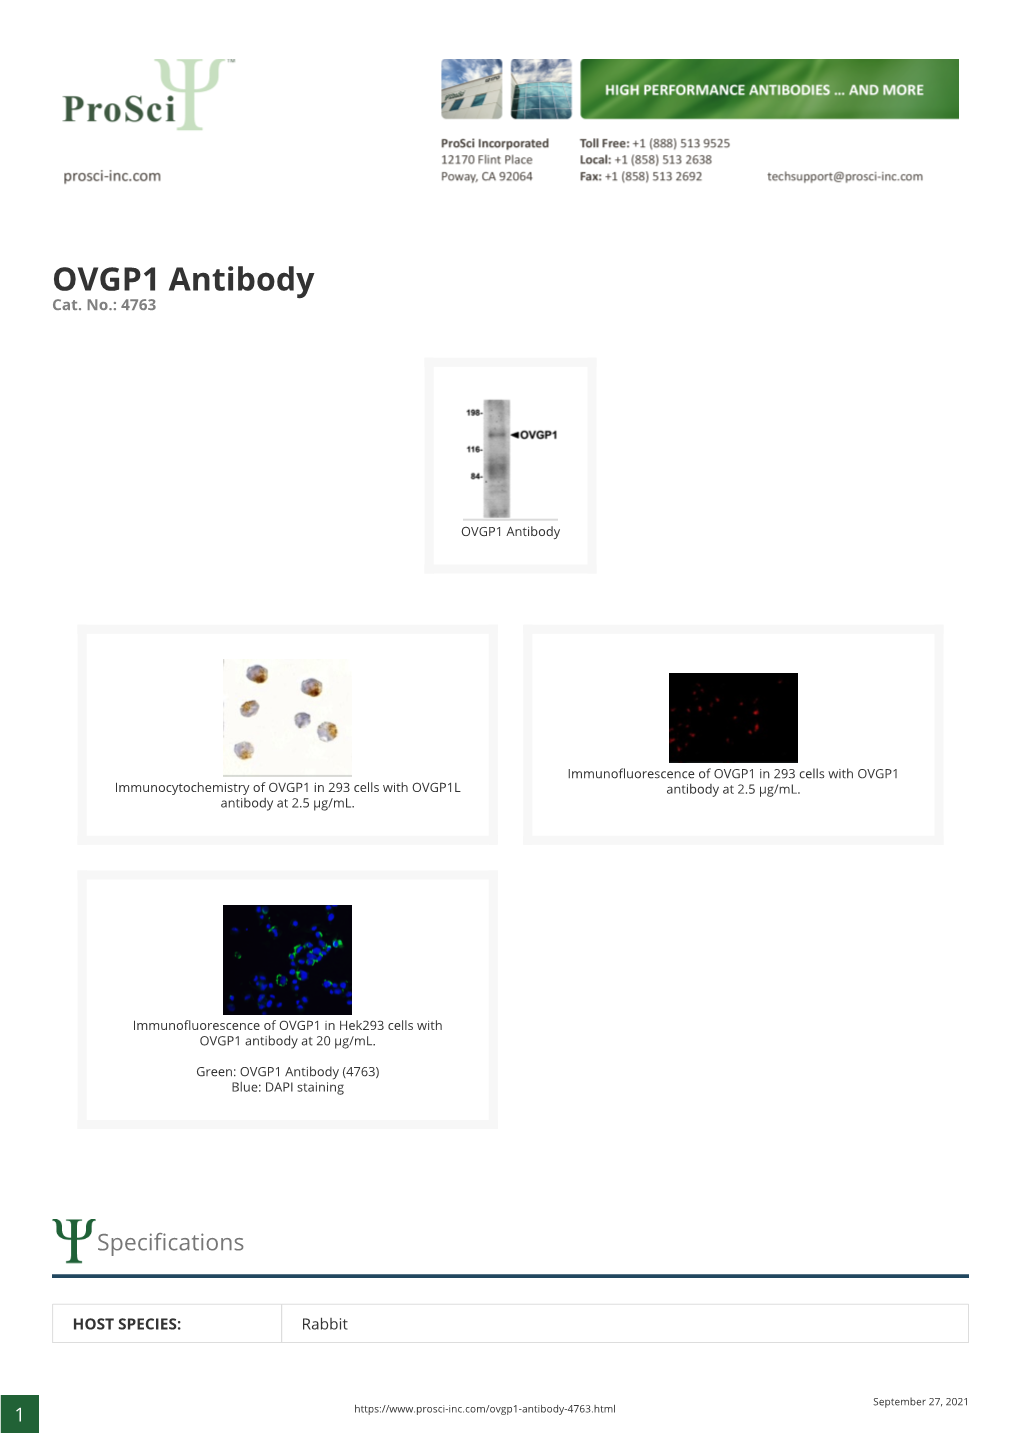 OVGP1 Antibody Cat